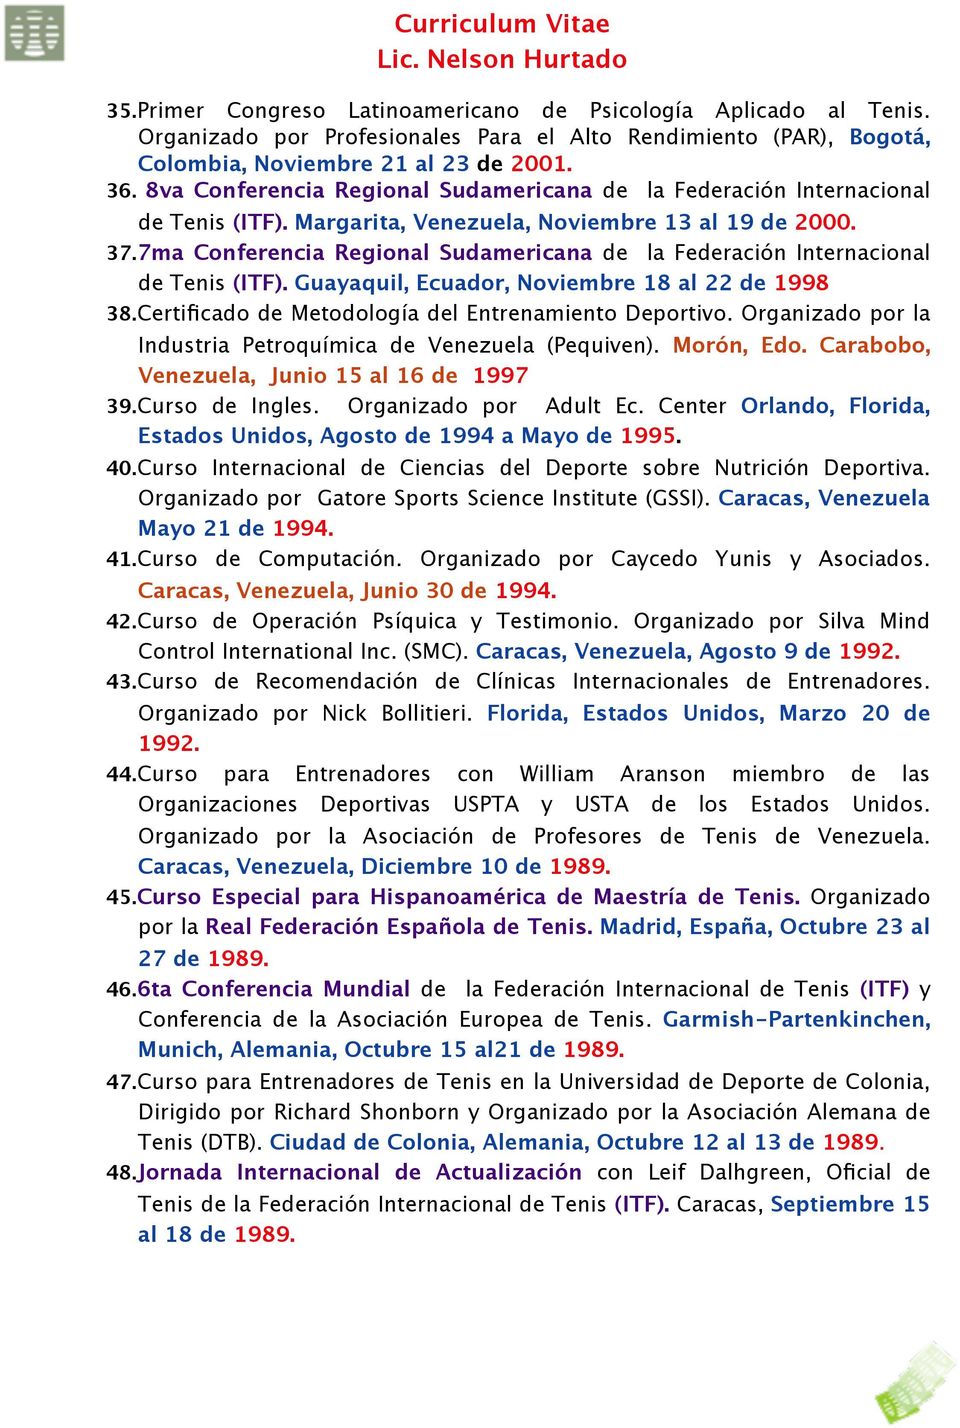 7ma Conferencia Regional Sudamericana de la Federación Internacional de Tenis (ITF). Guayaquil, Ecuador, Noviembre 18 al 22 de 1998 38.Certificado de Metodología del Entrenamiento Deportivo.